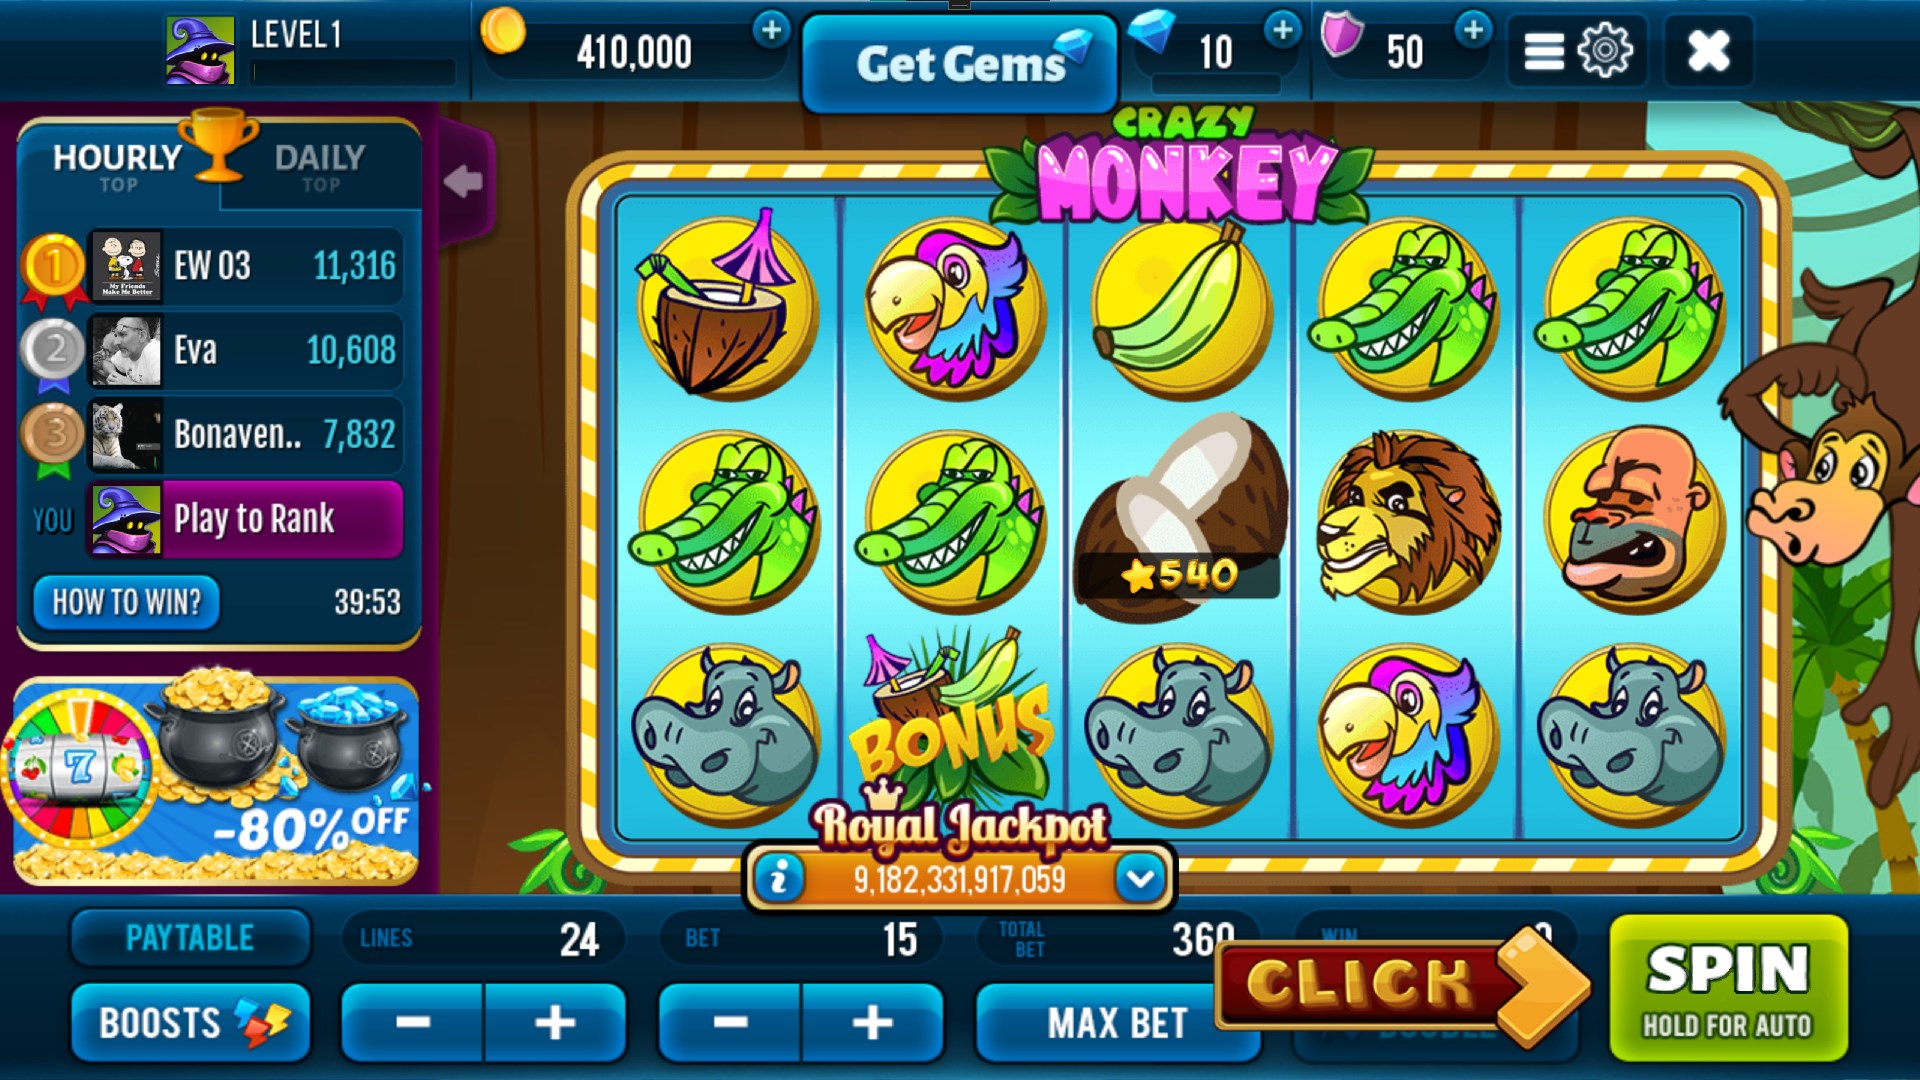 Imágen 1 Crazy Monkey Wild Slot Machine windows